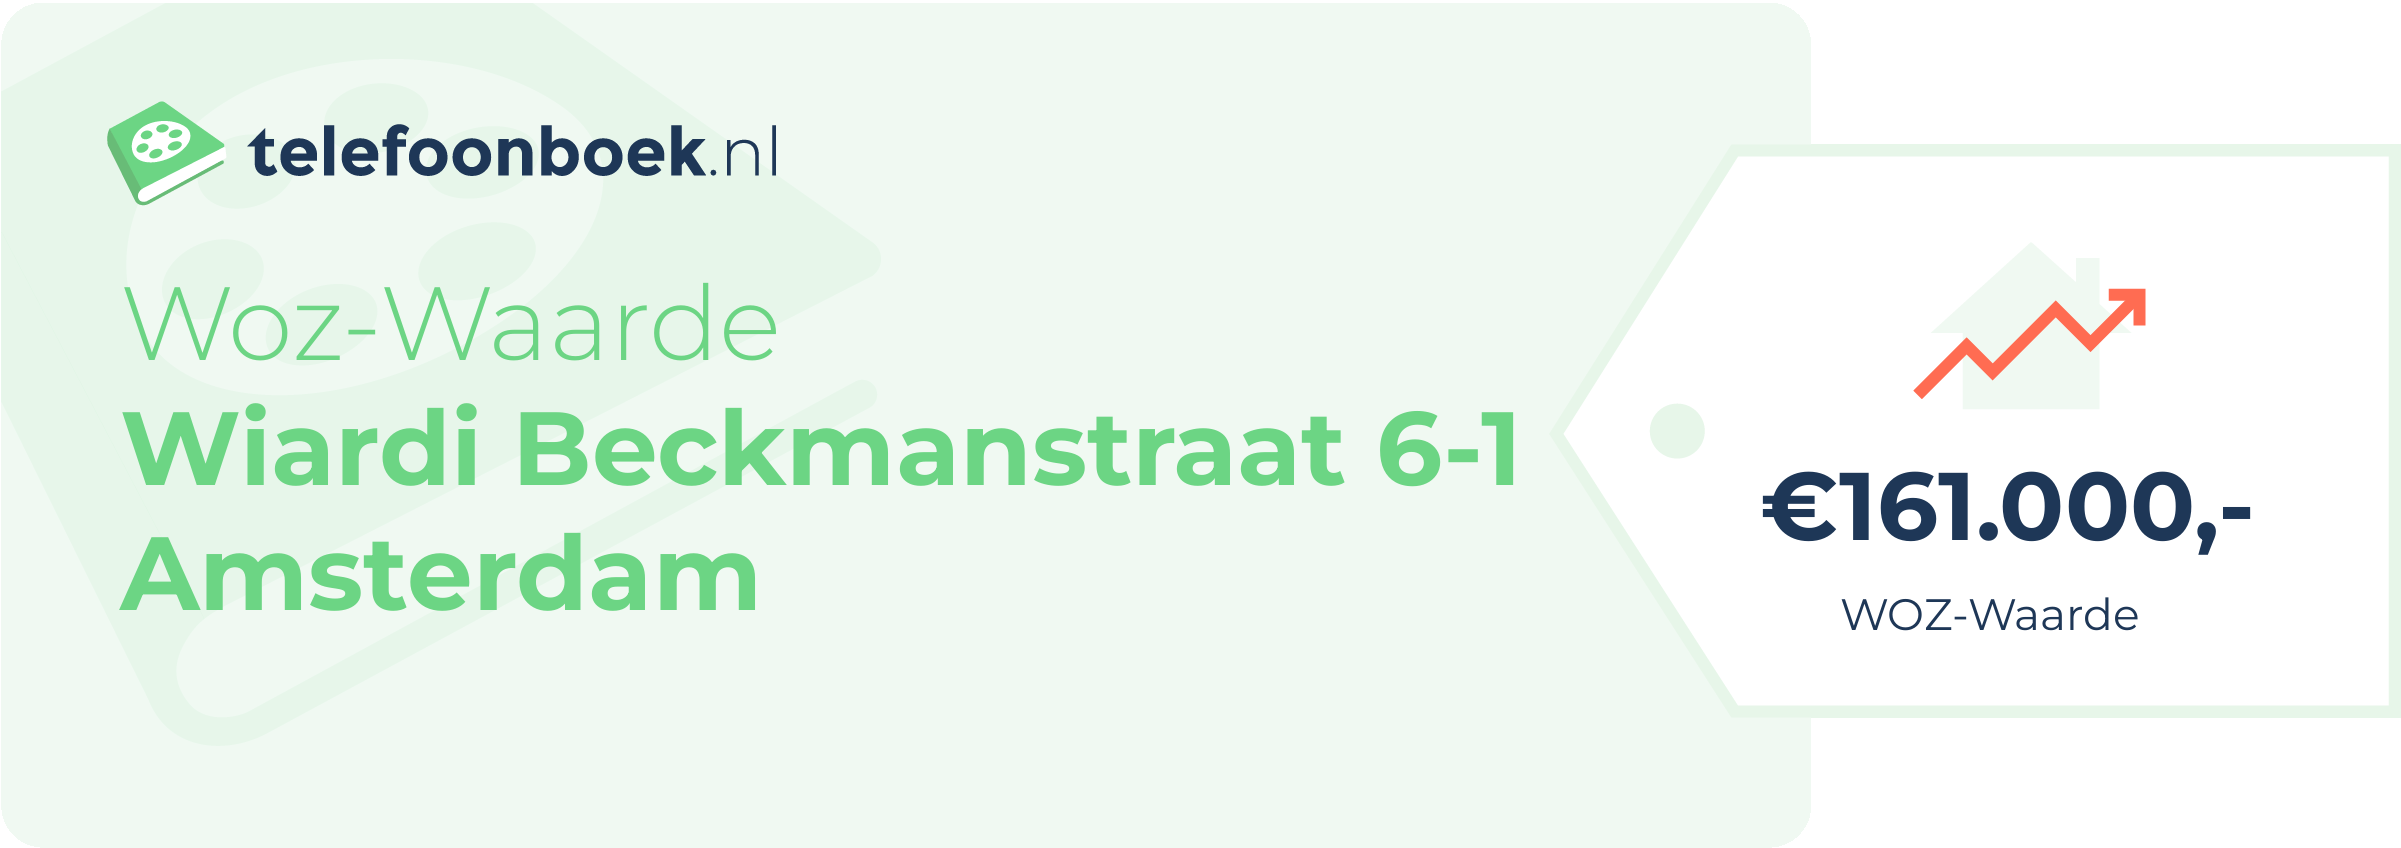 WOZ-waarde Wiardi Beckmanstraat 6-1 Amsterdam